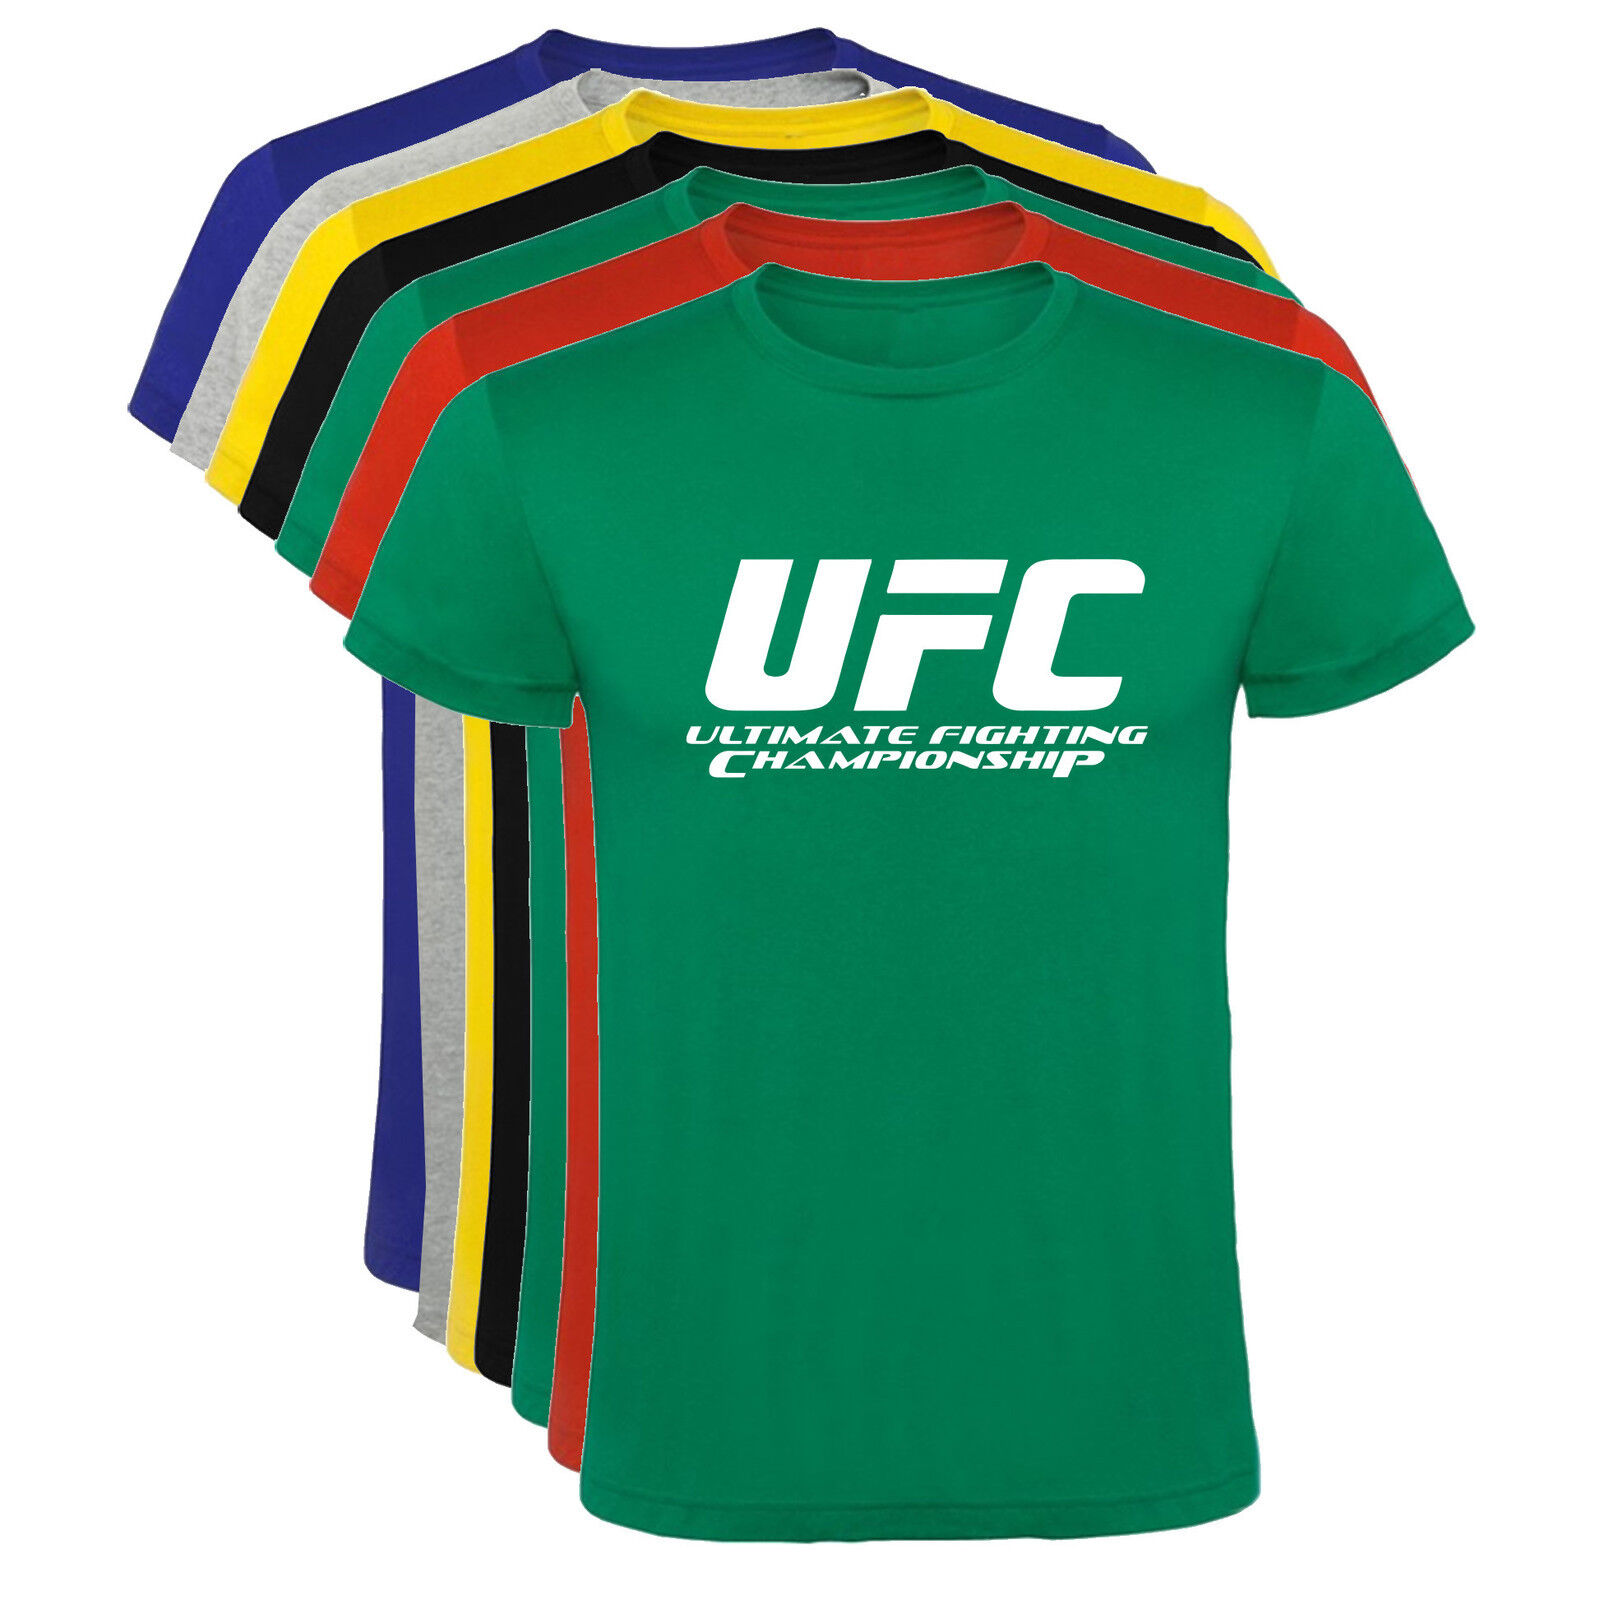 Camiseta UFC Ultimate Fighting Championship Hombre varias tallas y colores